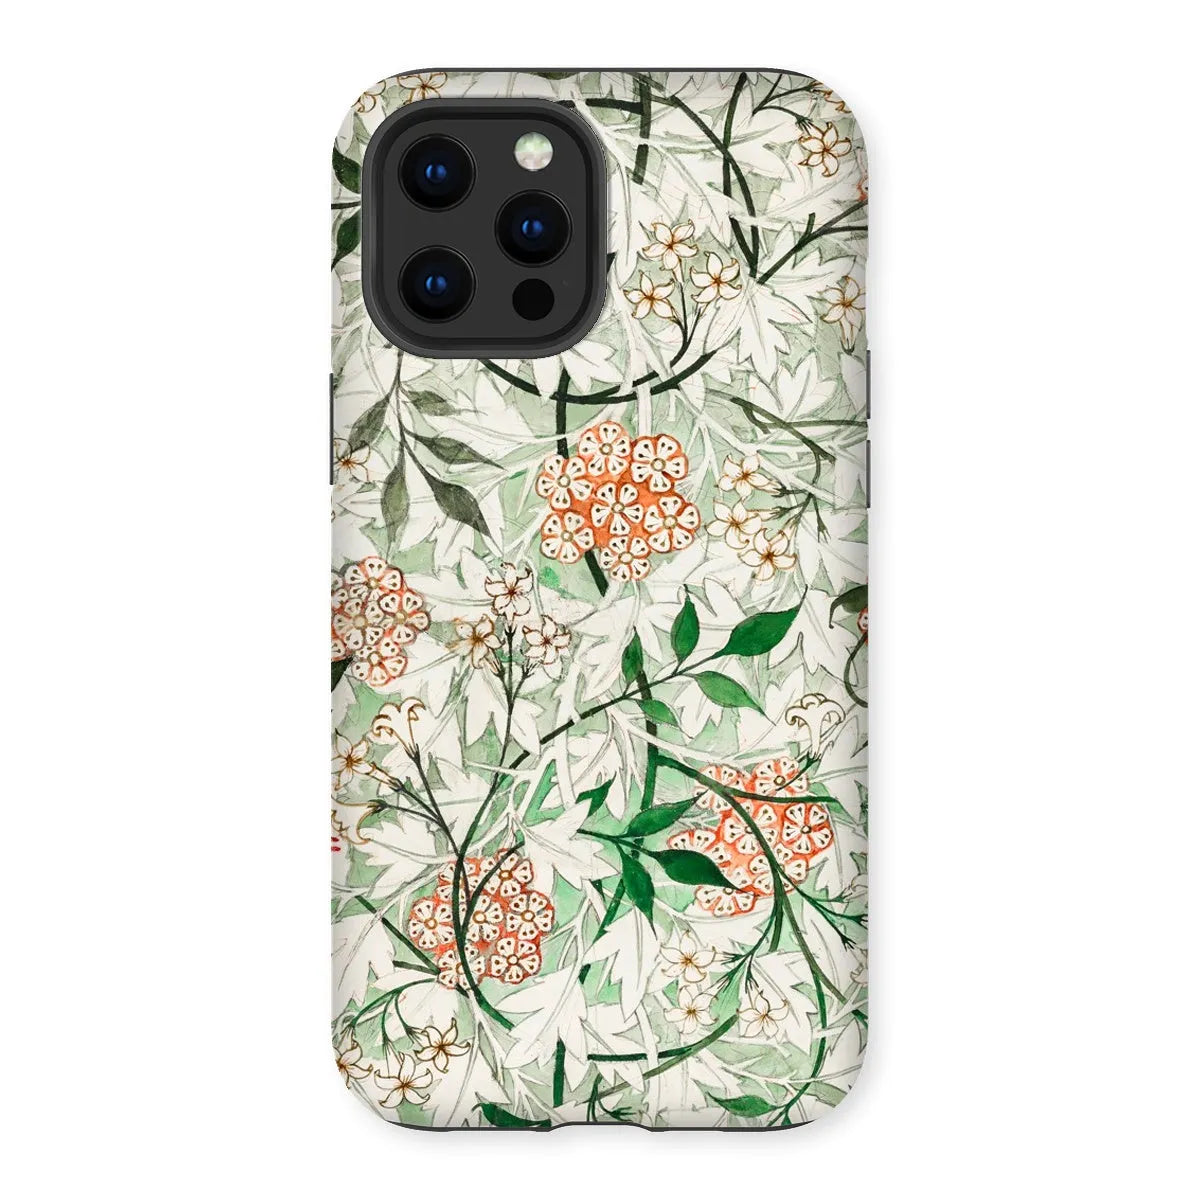 Jasmine Floral Aesthetic Art Phone Case - William Morris - Iphone 12 Pro Max / Matte - Mobile Phone Cases - Aesthetic